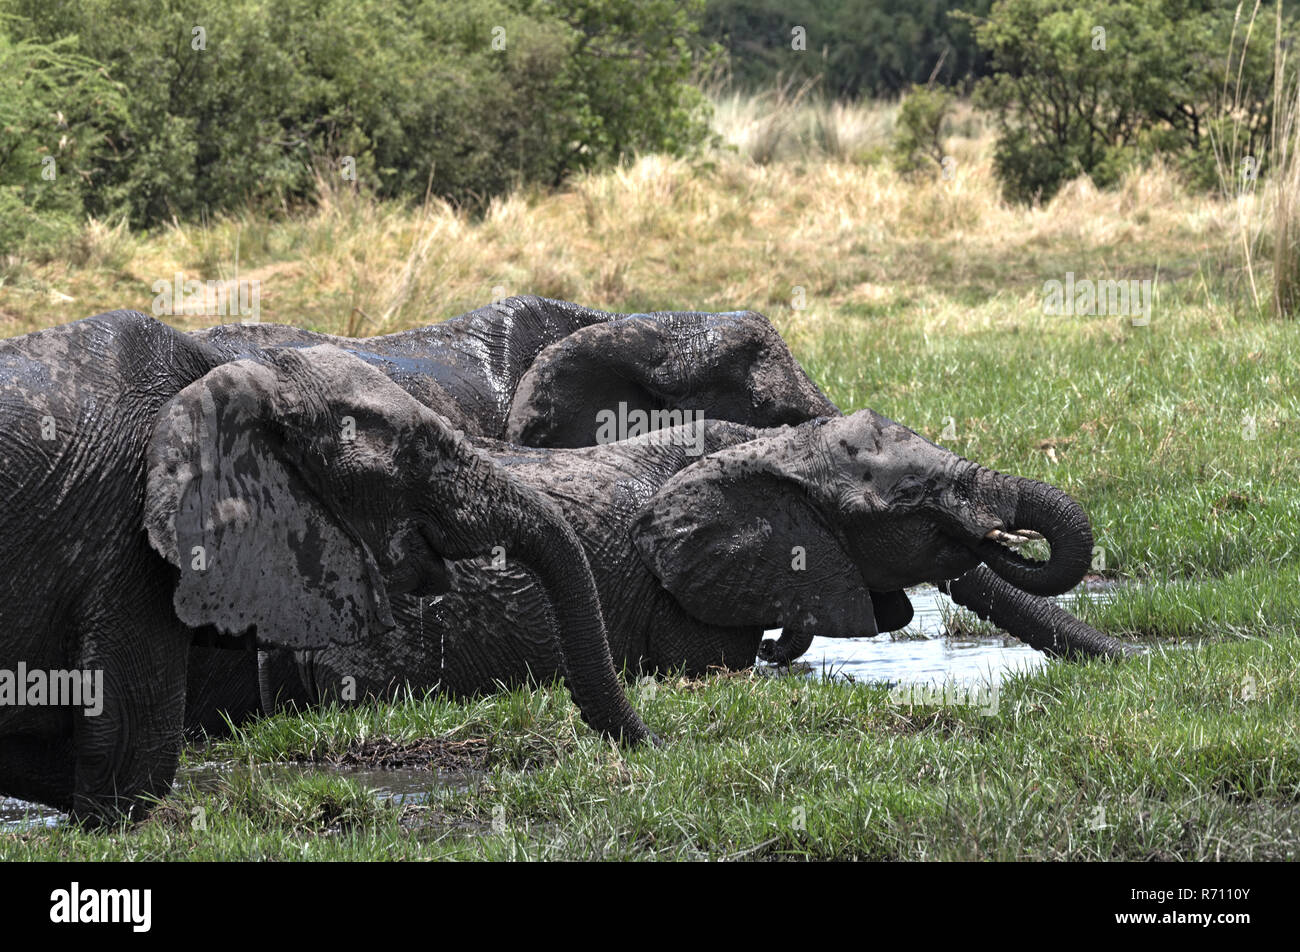 Groupe d'éléphants en baignoire et de l'alcool à un étang dans le Parc National de Chobe, au Botswana Banque D'Images